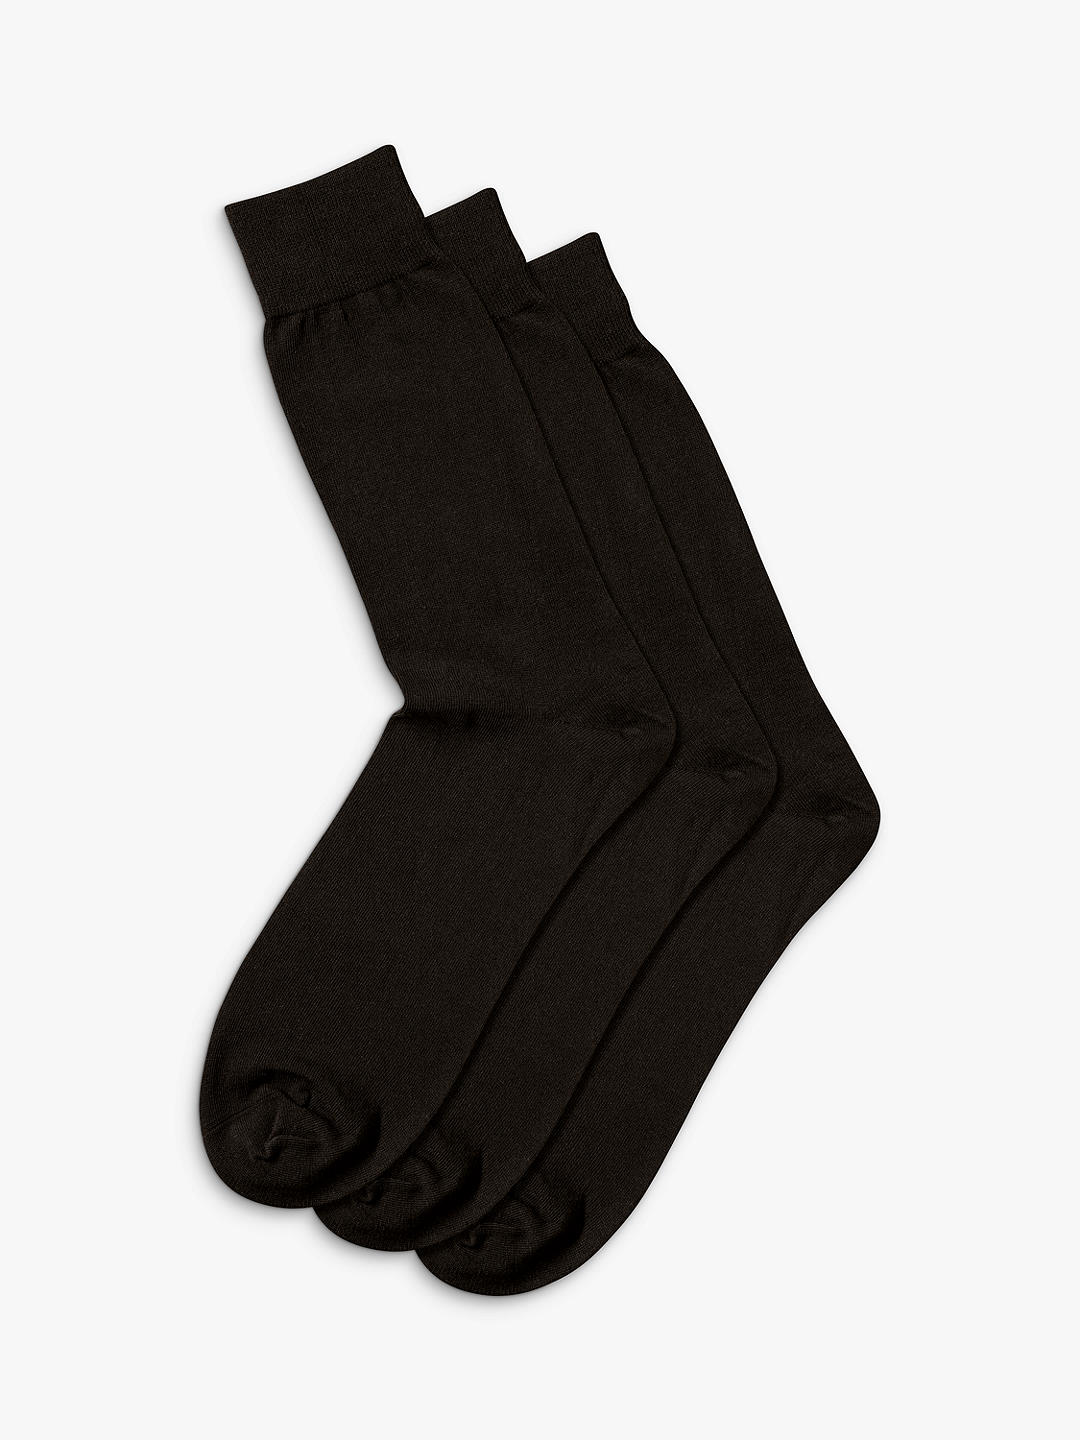 Charles Tyrwhitt Cotton Rich Socks, Pack of 3, Black